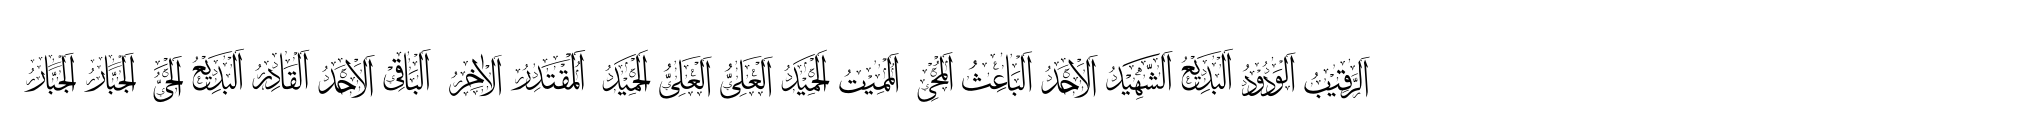 99 Names of ALLAH Elegant image